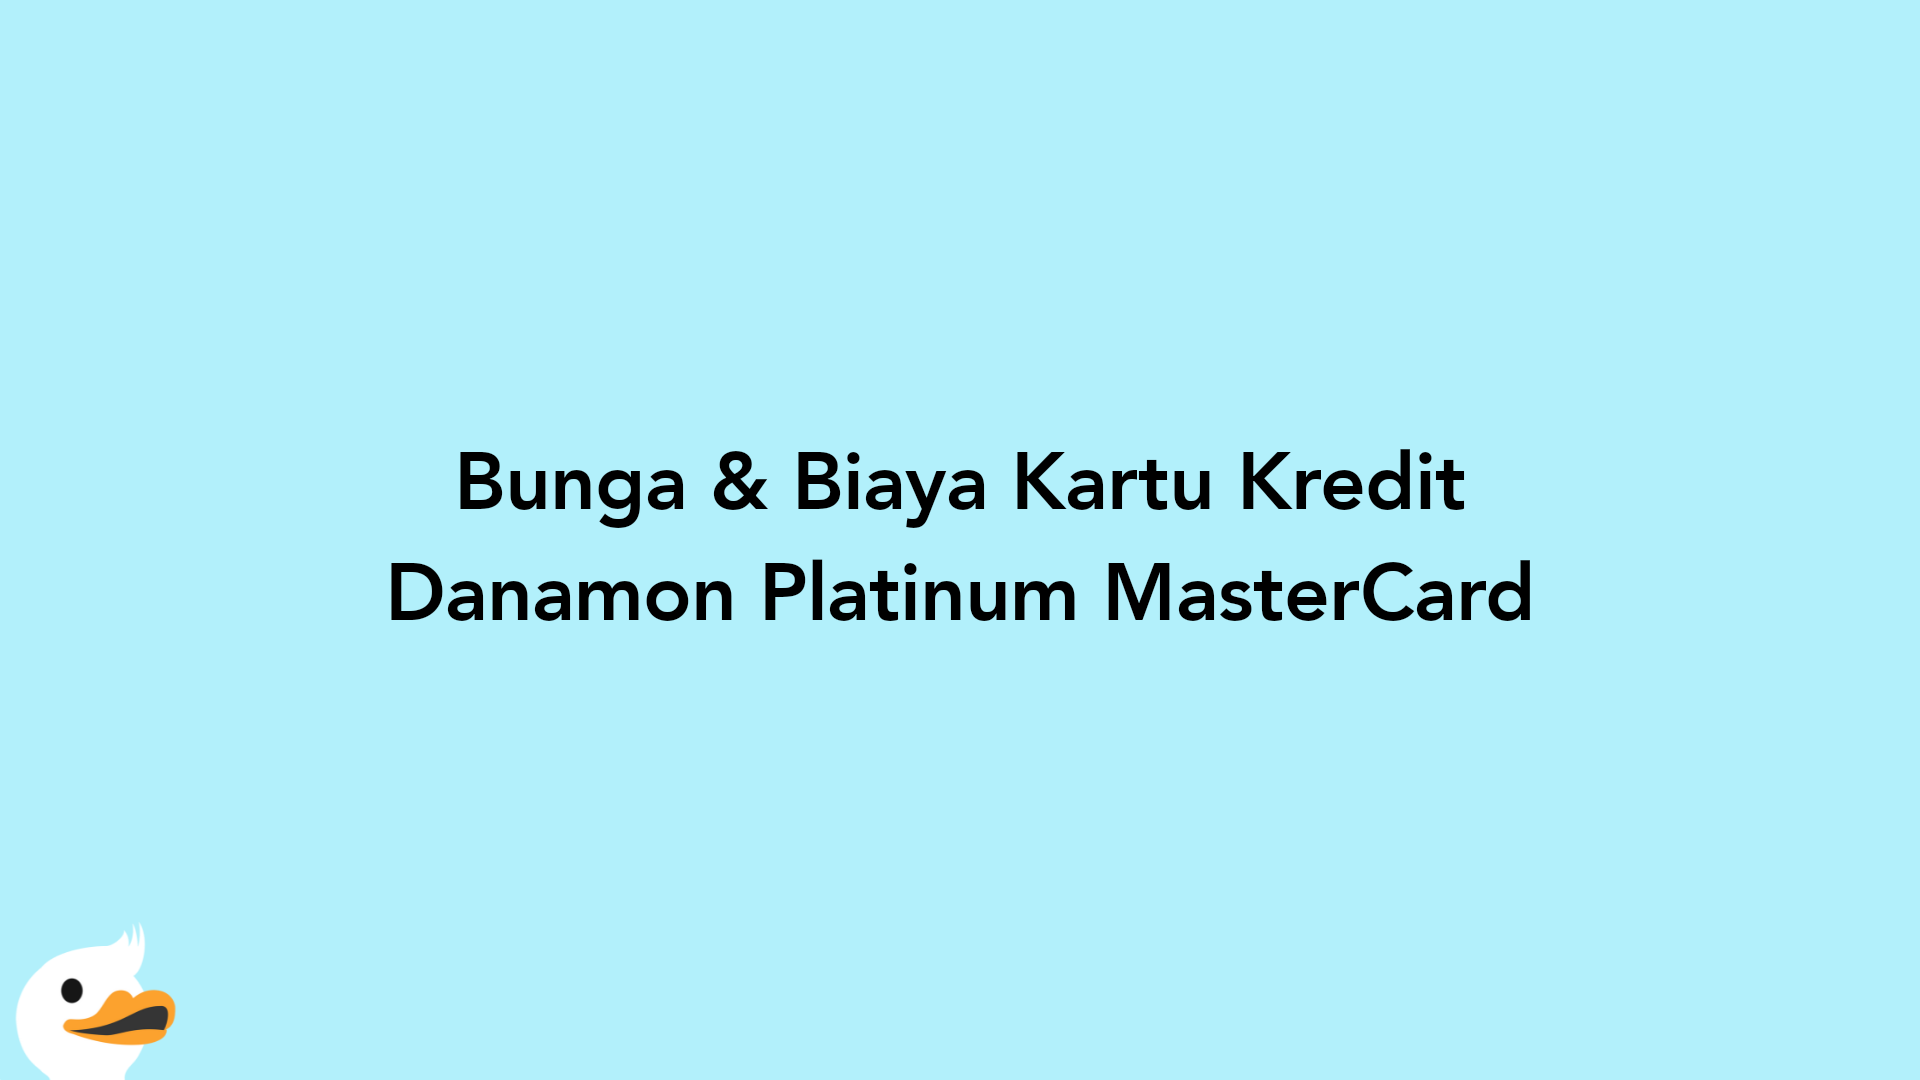 Bunga & Biaya Kartu Kredit Danamon Platinum MasterCard